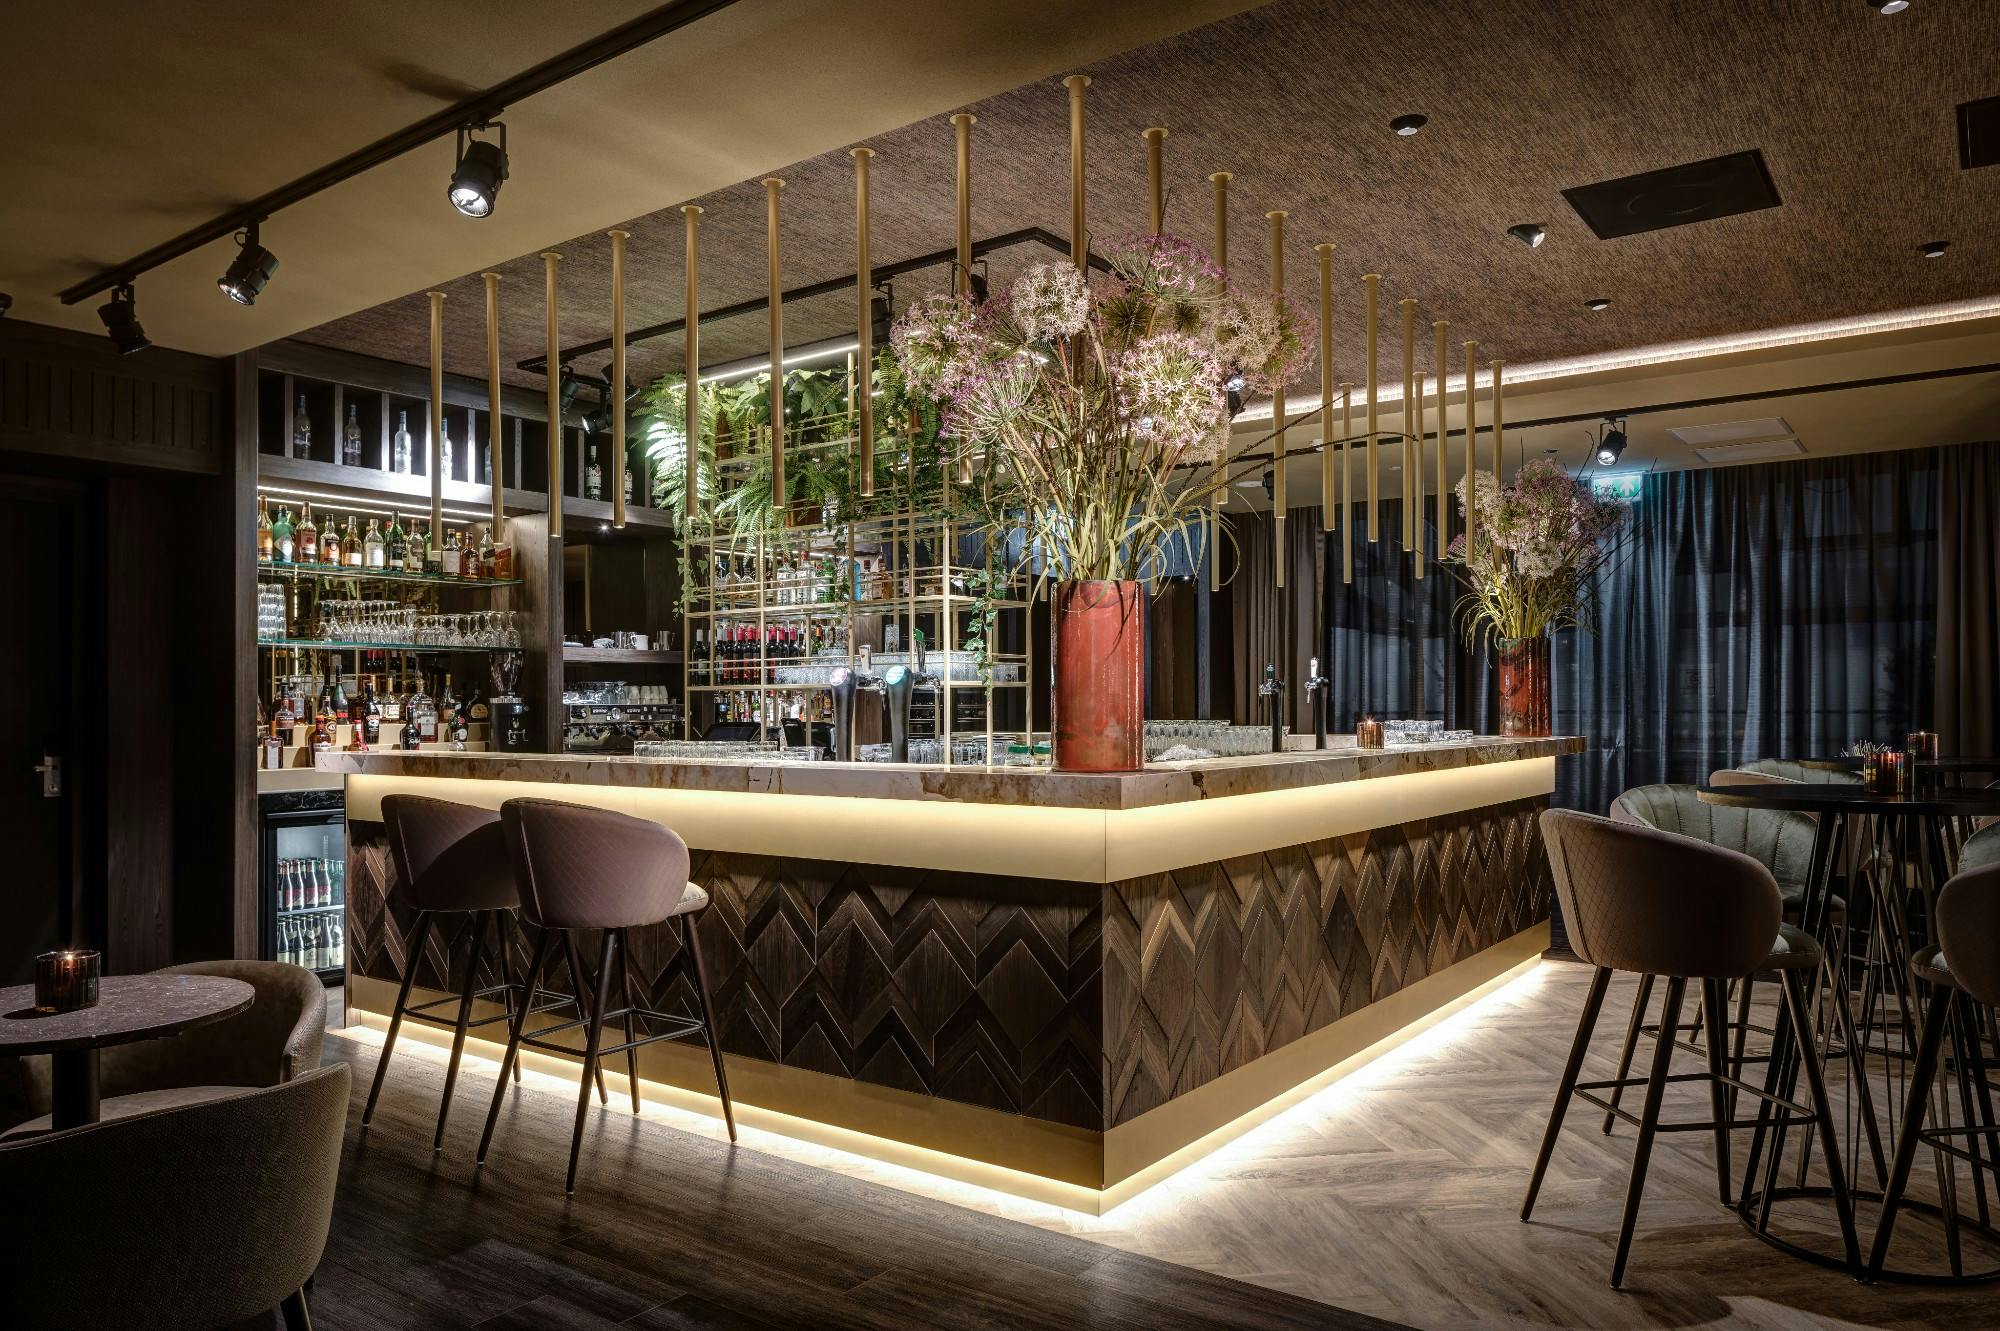 Imagem número 46 da actual secção de A rustic and cozy bar area for Pearl’s Place Restaurant & Pantry da Cosentino Portugal